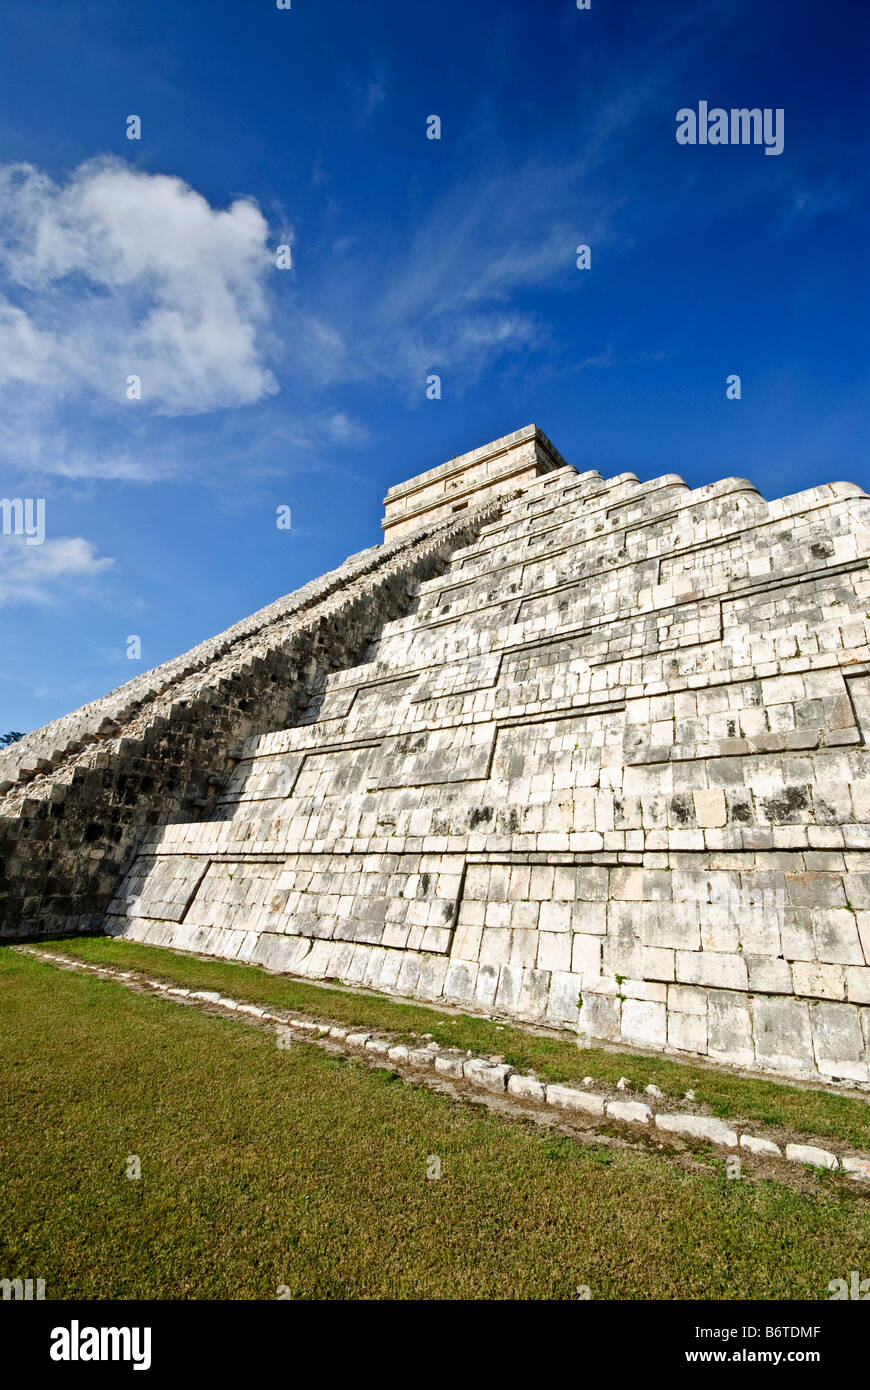 CHICHEN ITZA, Mexique - El Castillo (également connu sous le nom de Temple d'Kuklcan) à l'ancienne ruines mayas de Chichen Itza, Yucatan, Mexique 081216092732 1921x.tif Banque D'Images